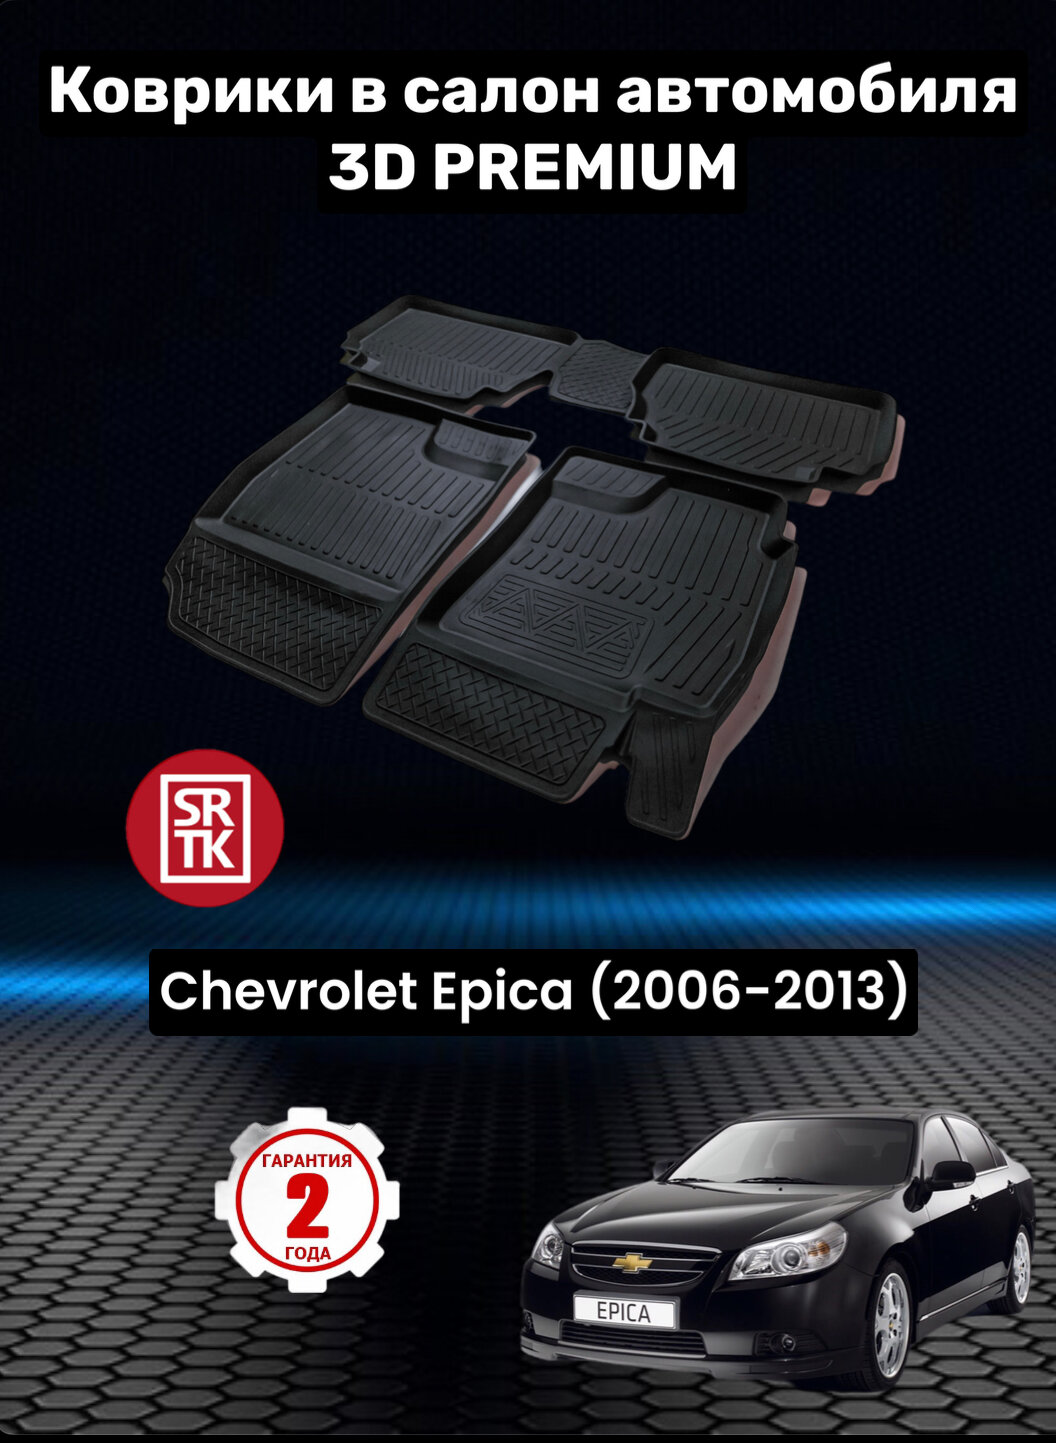 Коврики резиновые в салон для Шевролет Эпика/Chevrolet Еpicа (2006-2013)/3D PREMIUM SRTK (Саранск) комплект в салон